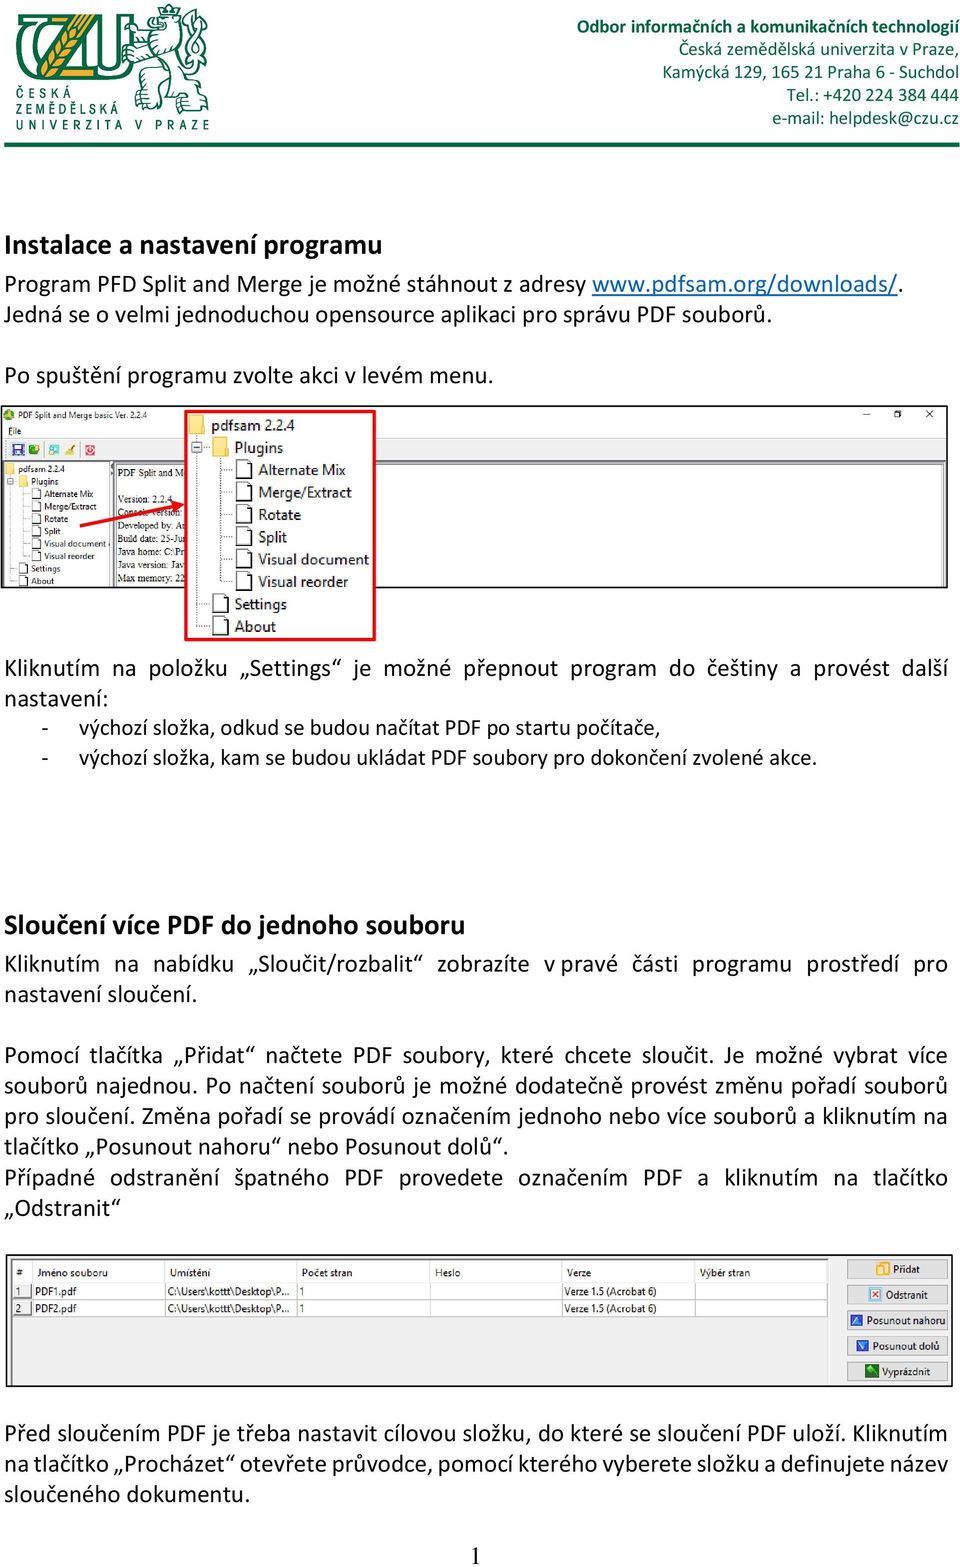 Kliknutím na položku Settings je možné přepnout program do češtiny a provést další nastavení: - výchozí složka, odkud se budou načítat PDF po startu počítače, - výchozí složka, kam se budou ukládat